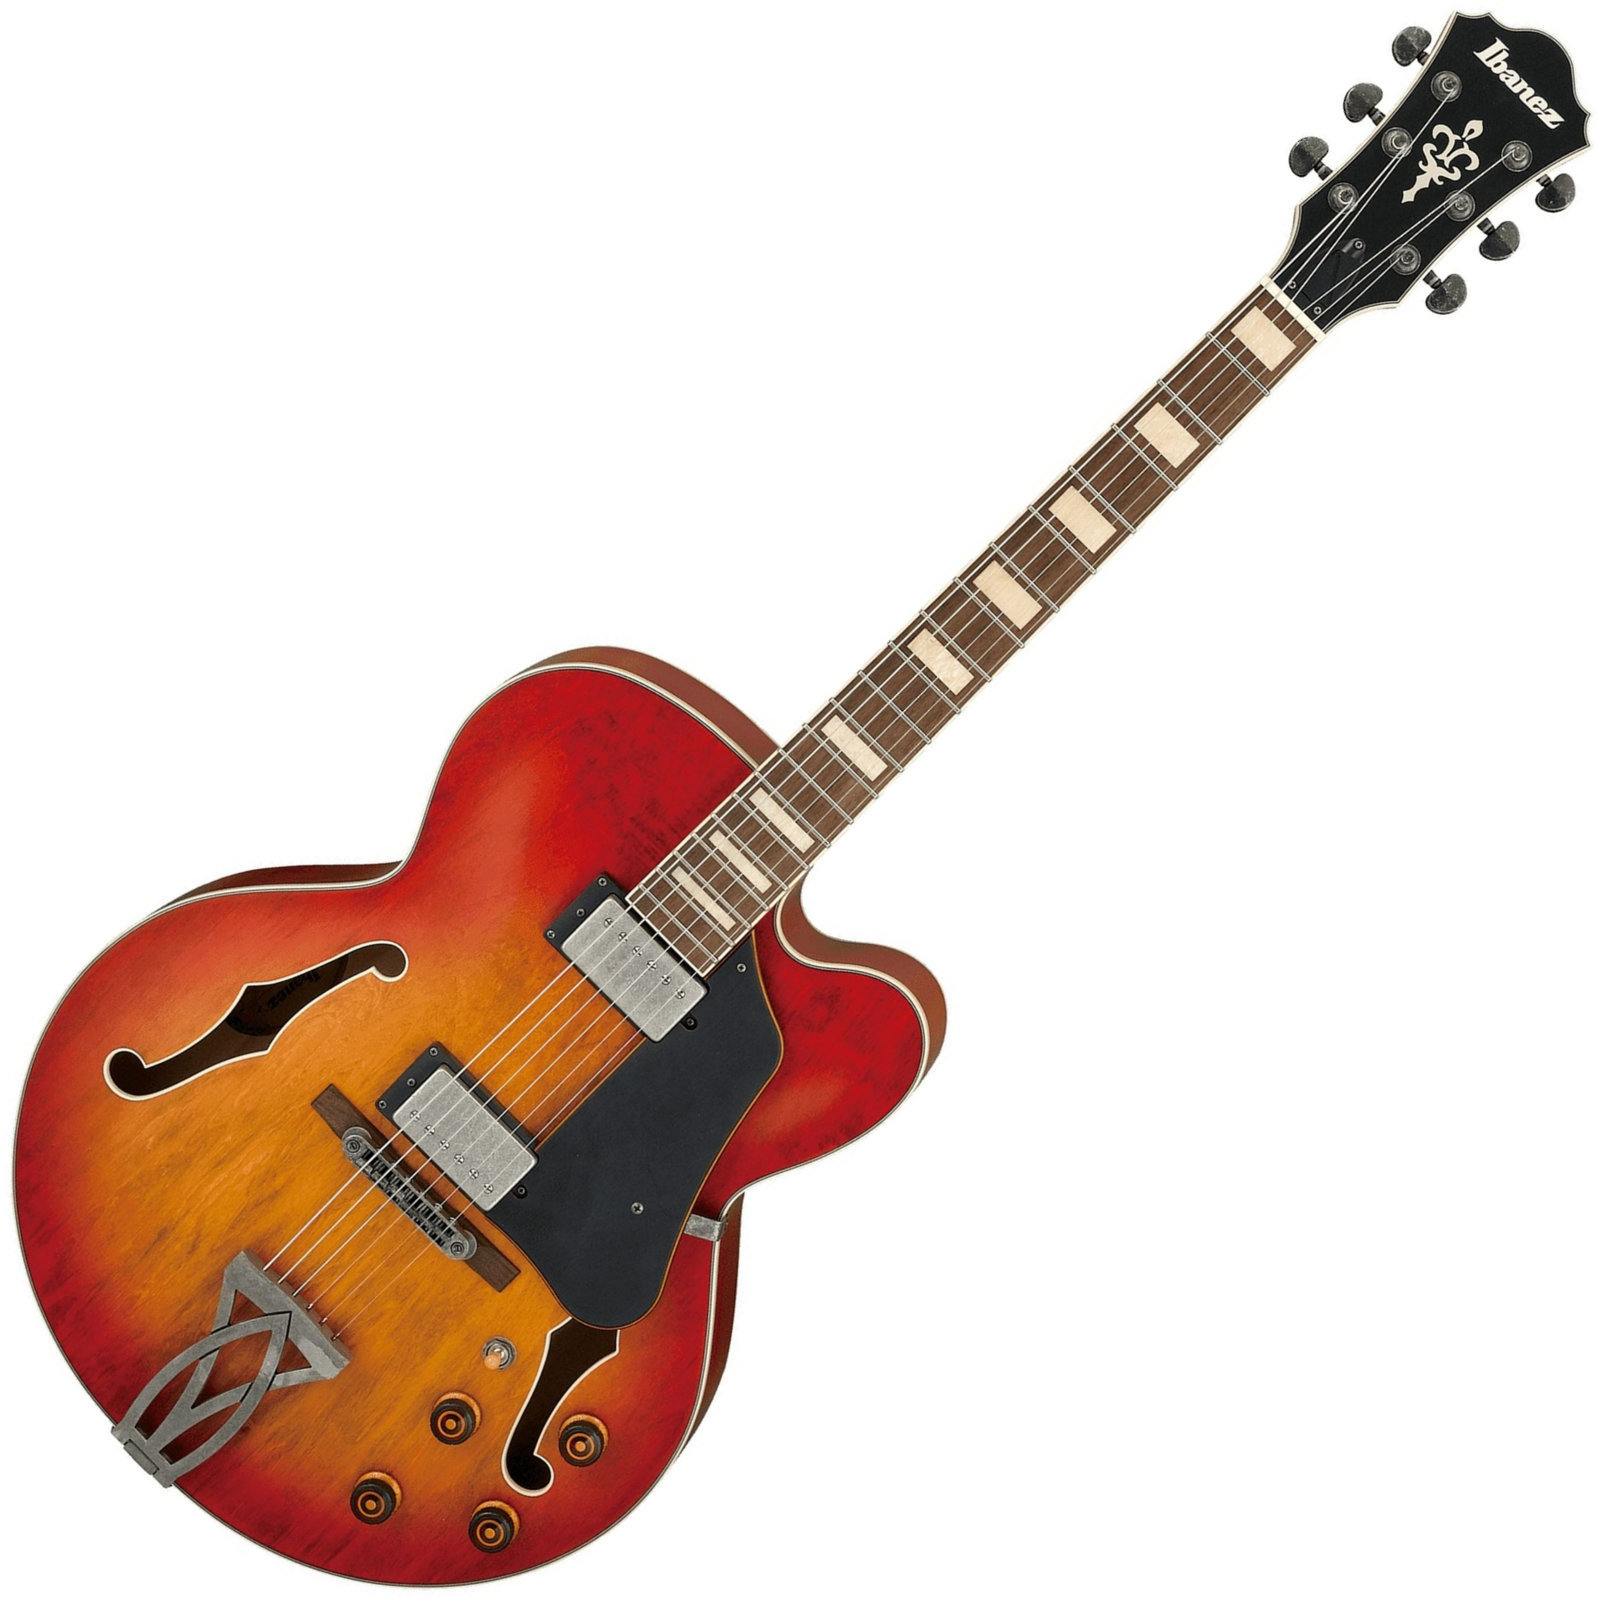 Halbresonanz-Gitarre Ibanez AFV75-VAL Vintage Amber Burst Low Gloss